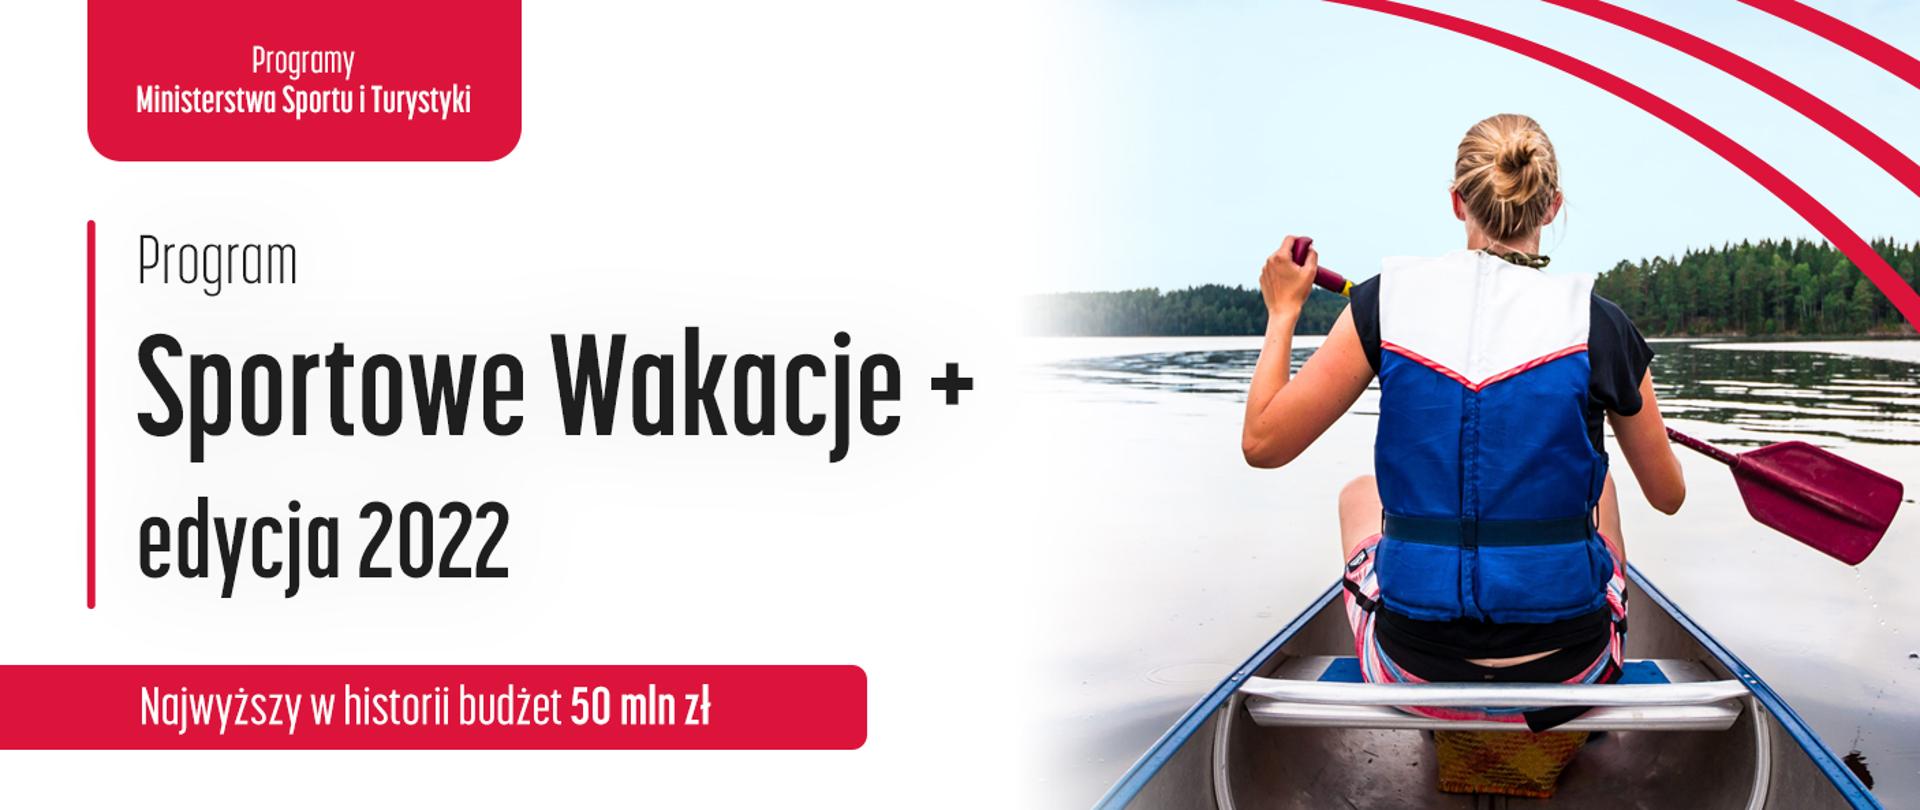 Grafika z napisem: Program Sportowe Wakacje+ edycja 2022. Najwyższy w historii budżet 50 mln zł. Na zdjęciu kobieta na łódce na jeziorze.